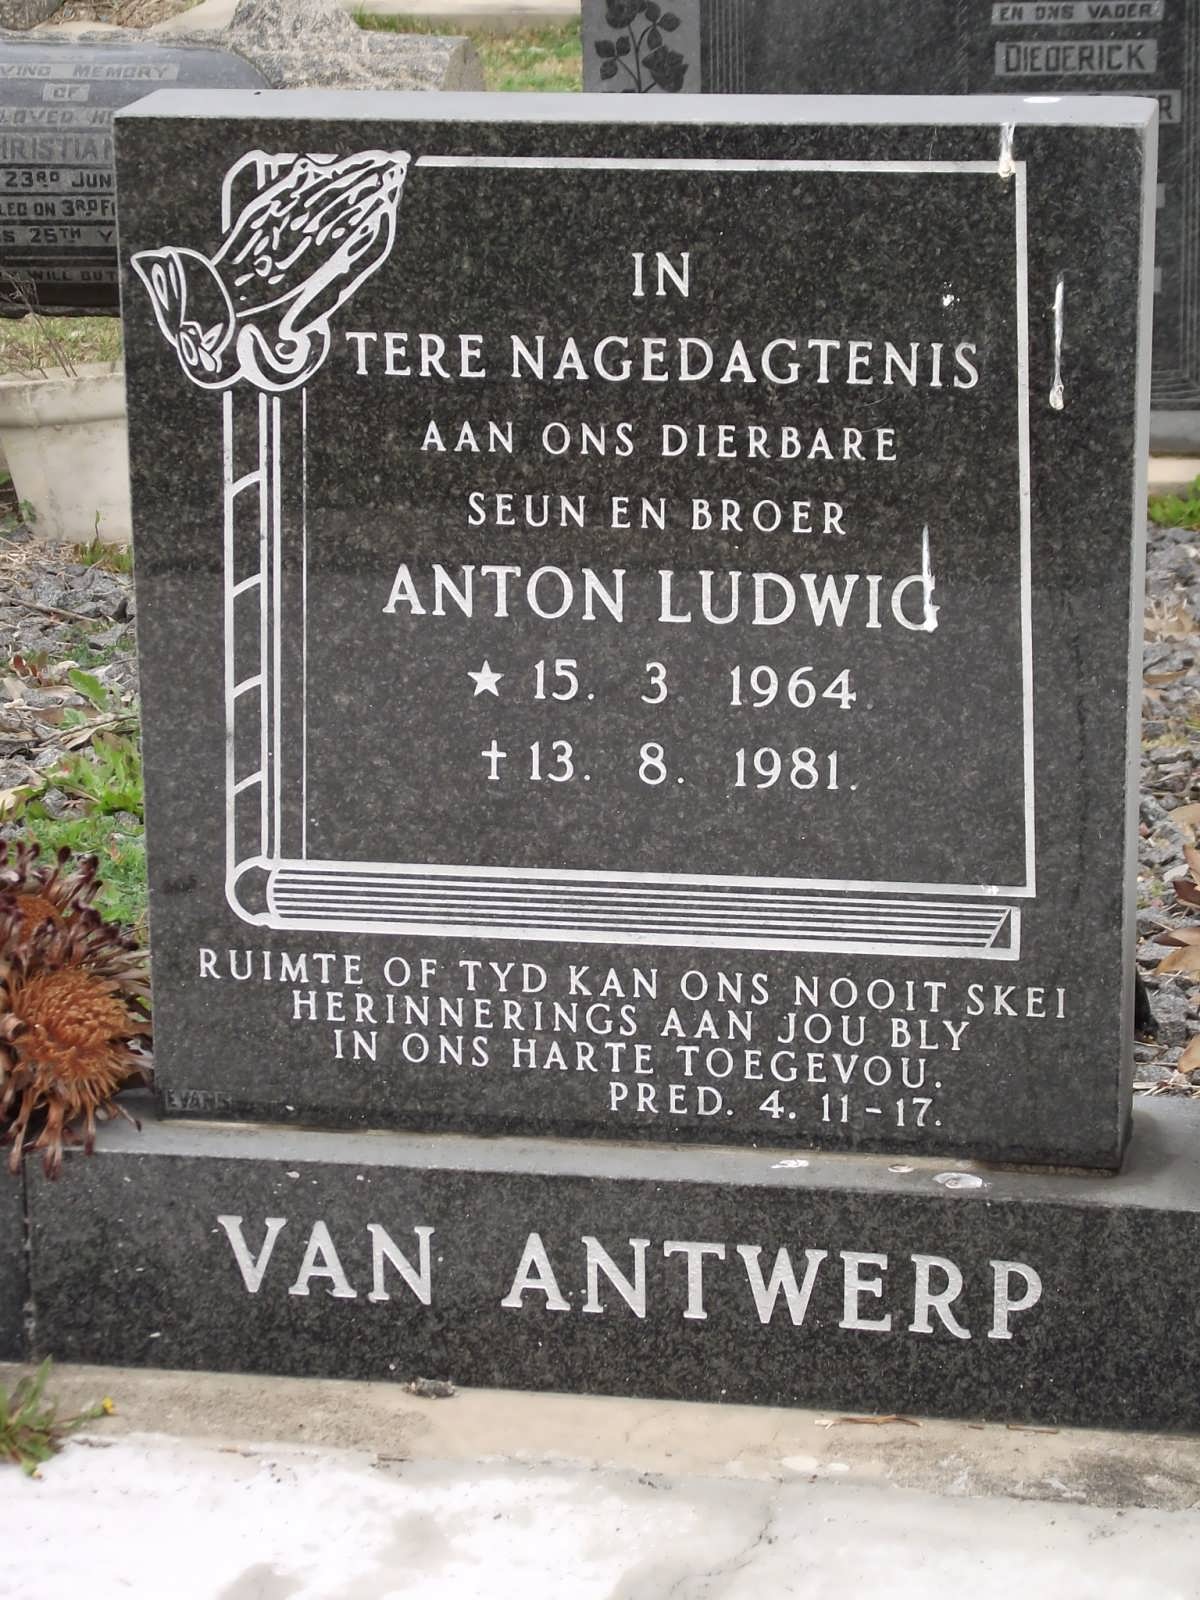 ANTWERP Anton Ludwig, van 1964-1981